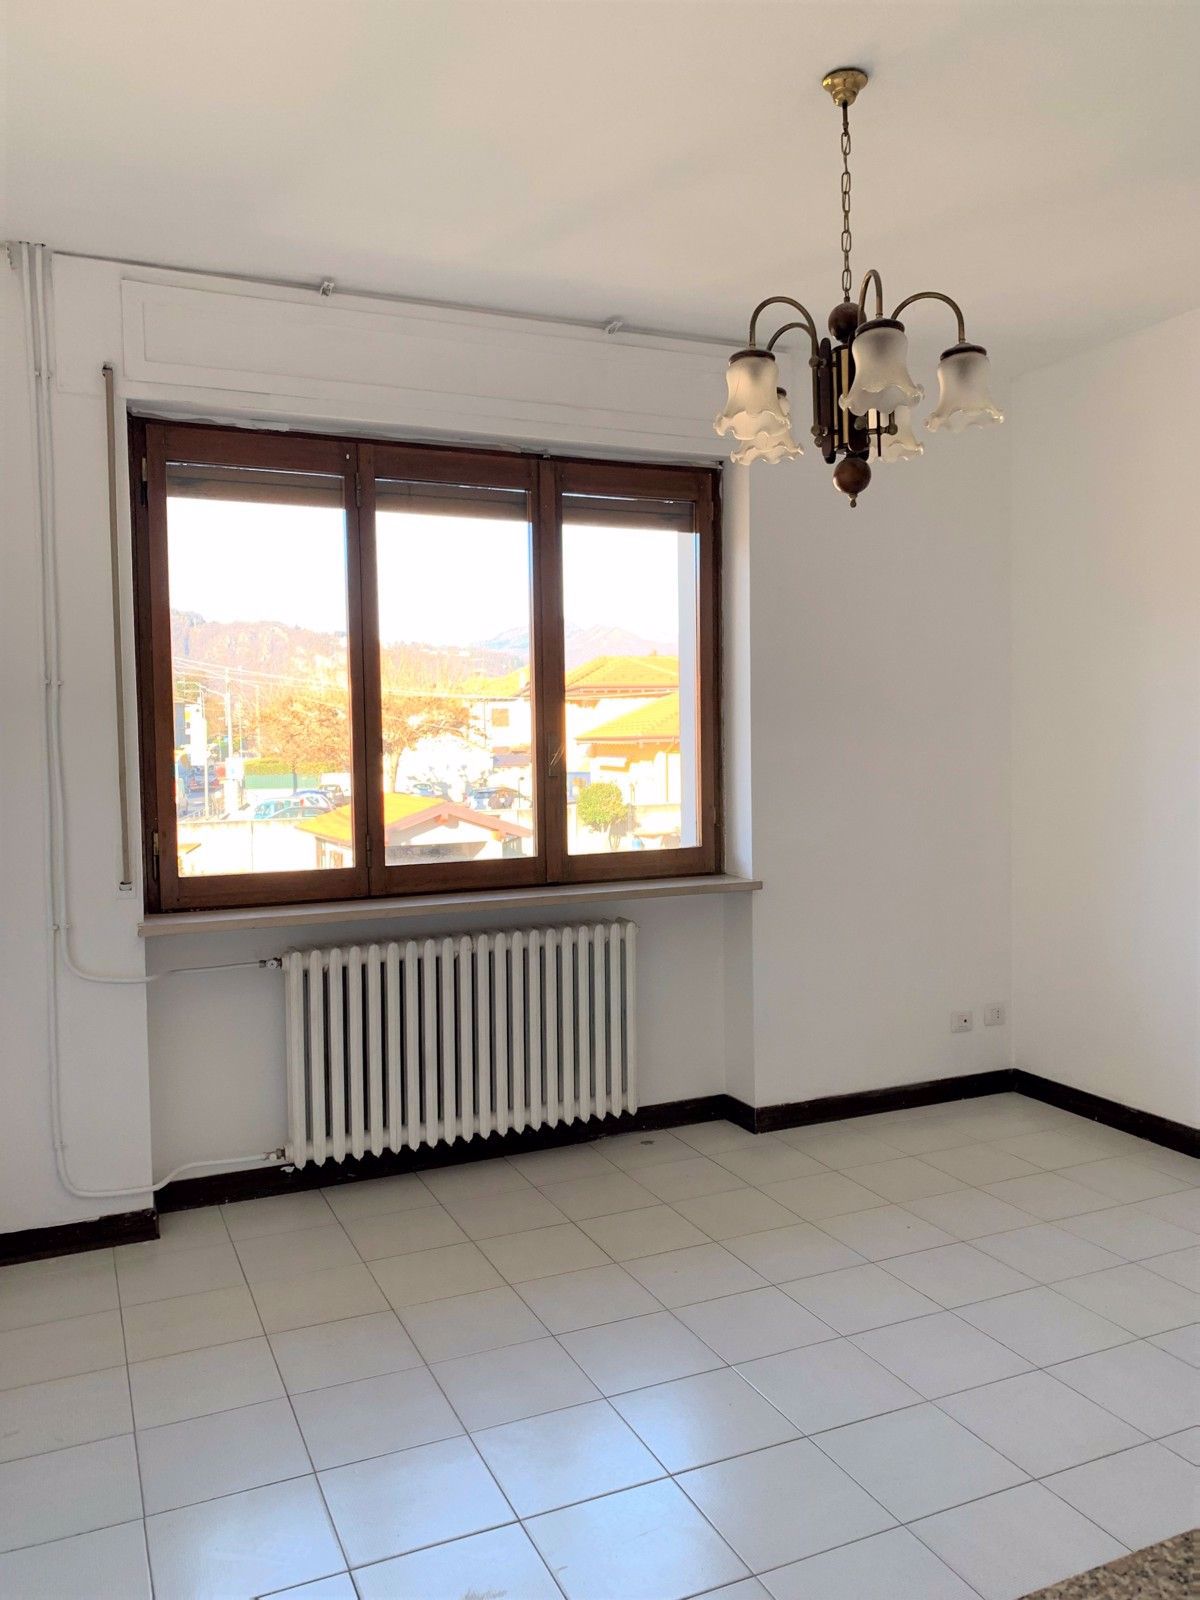 Appartamento in affitto a San Maurizio d'Opaglio, 2 locali, prezzo € 440 | CambioCasa.it